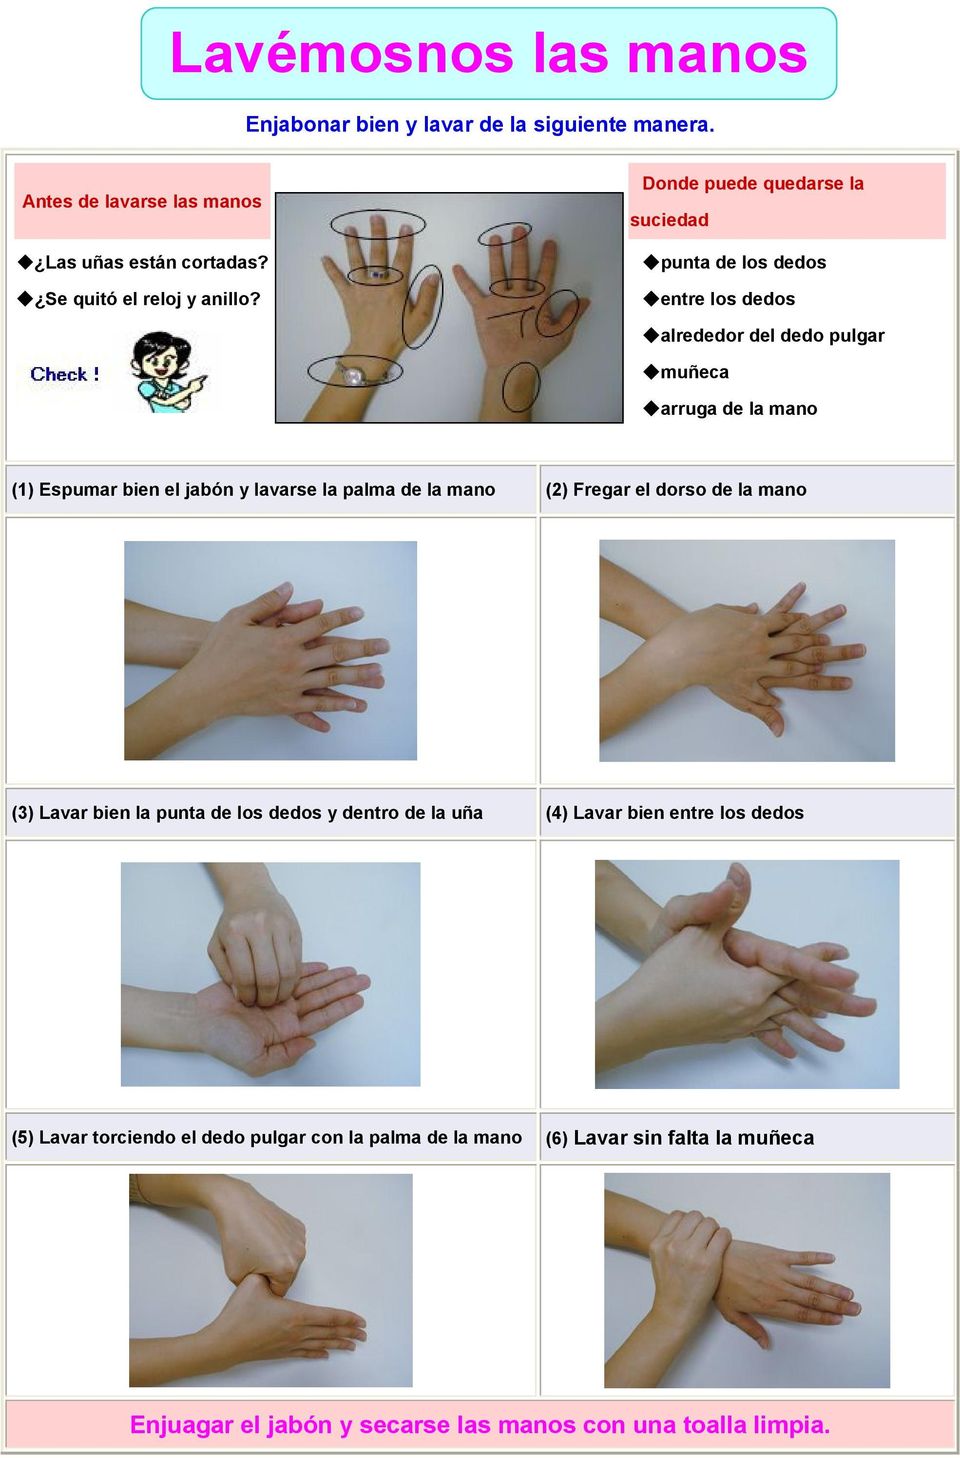 lavarse la palma de la mano (2) Fregar el dorso de la mano (3) Lavar bien la punta de los dedos y dentro de la uña (4) Lavar bien entre los dedos